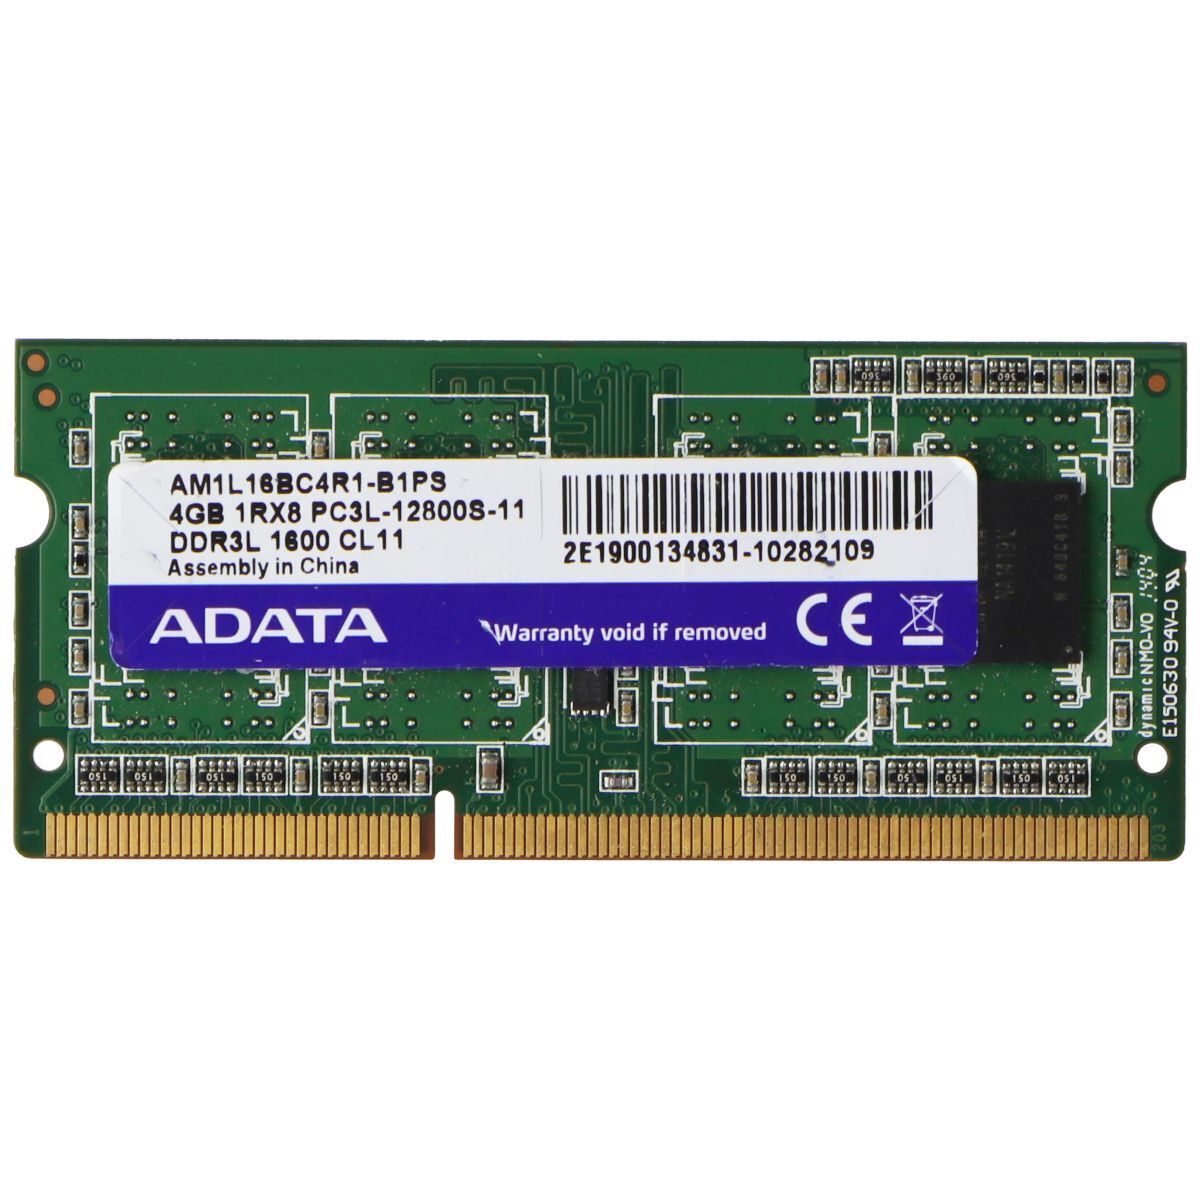 ADATA (4GB) DDR3L PC3L-12800S 1600MHz CL11 Laptop Memory RAM (AM1L16BC4R1-B1PS)